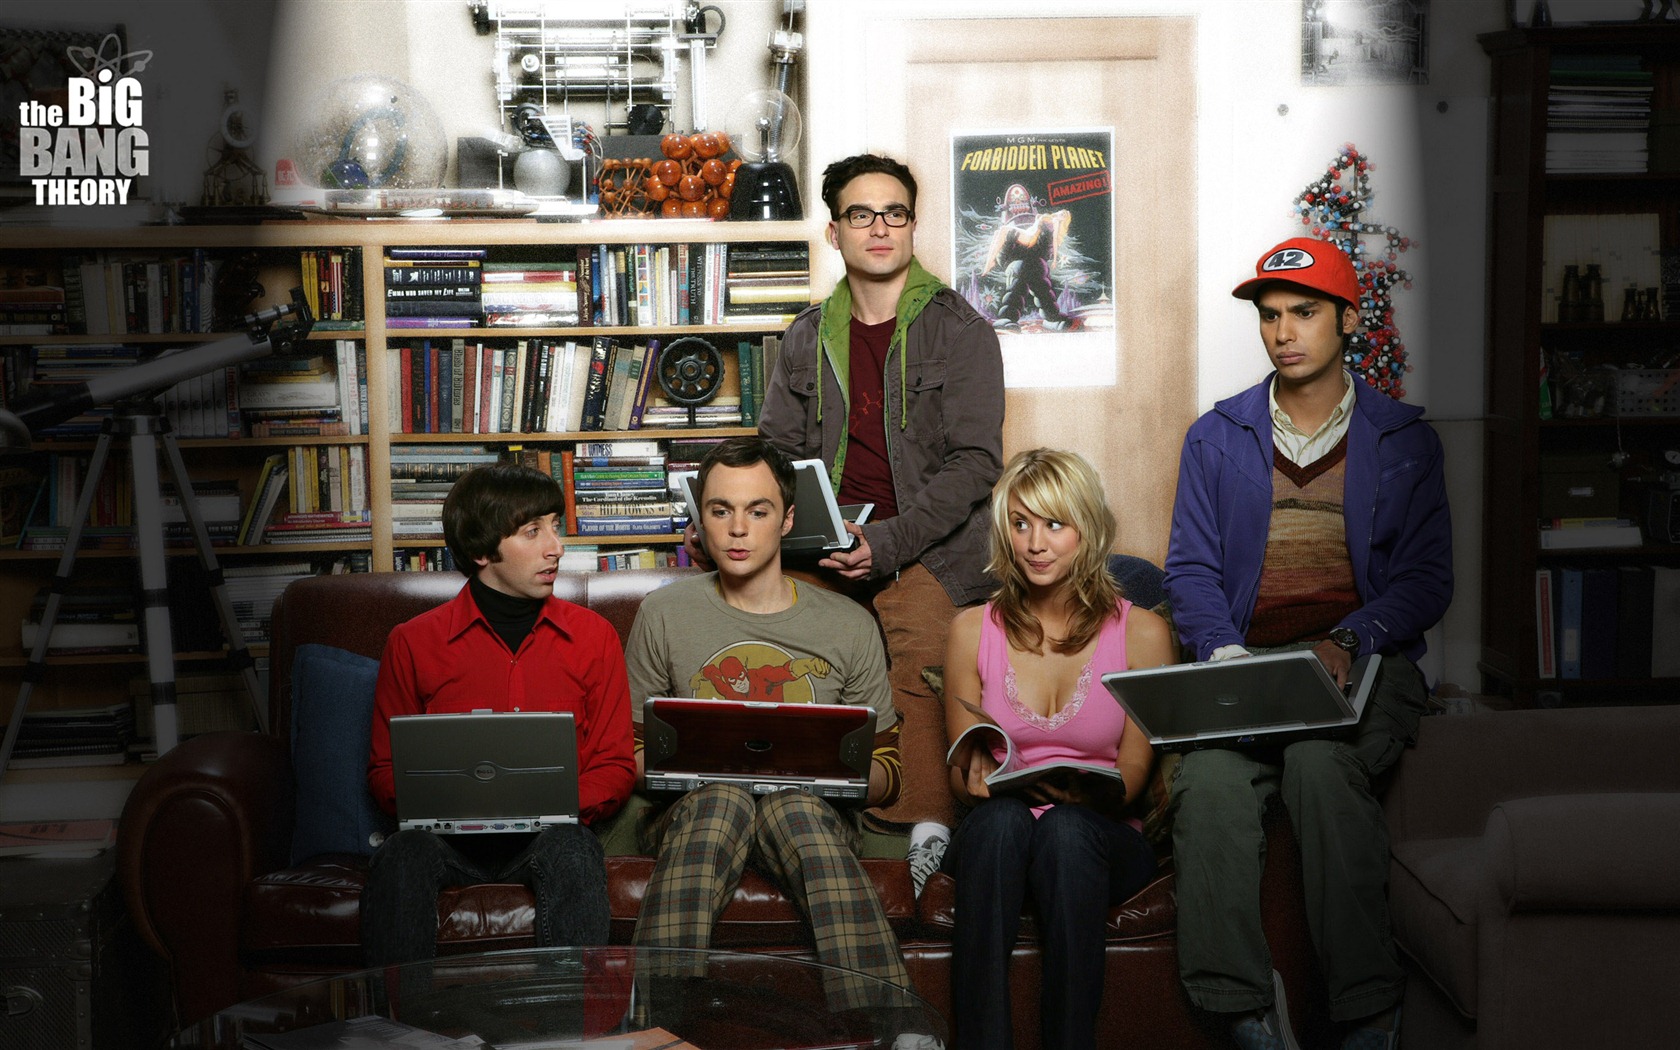 The Big Bang Theory 生活大爆炸 电视剧高清壁纸19 - 1680x1050